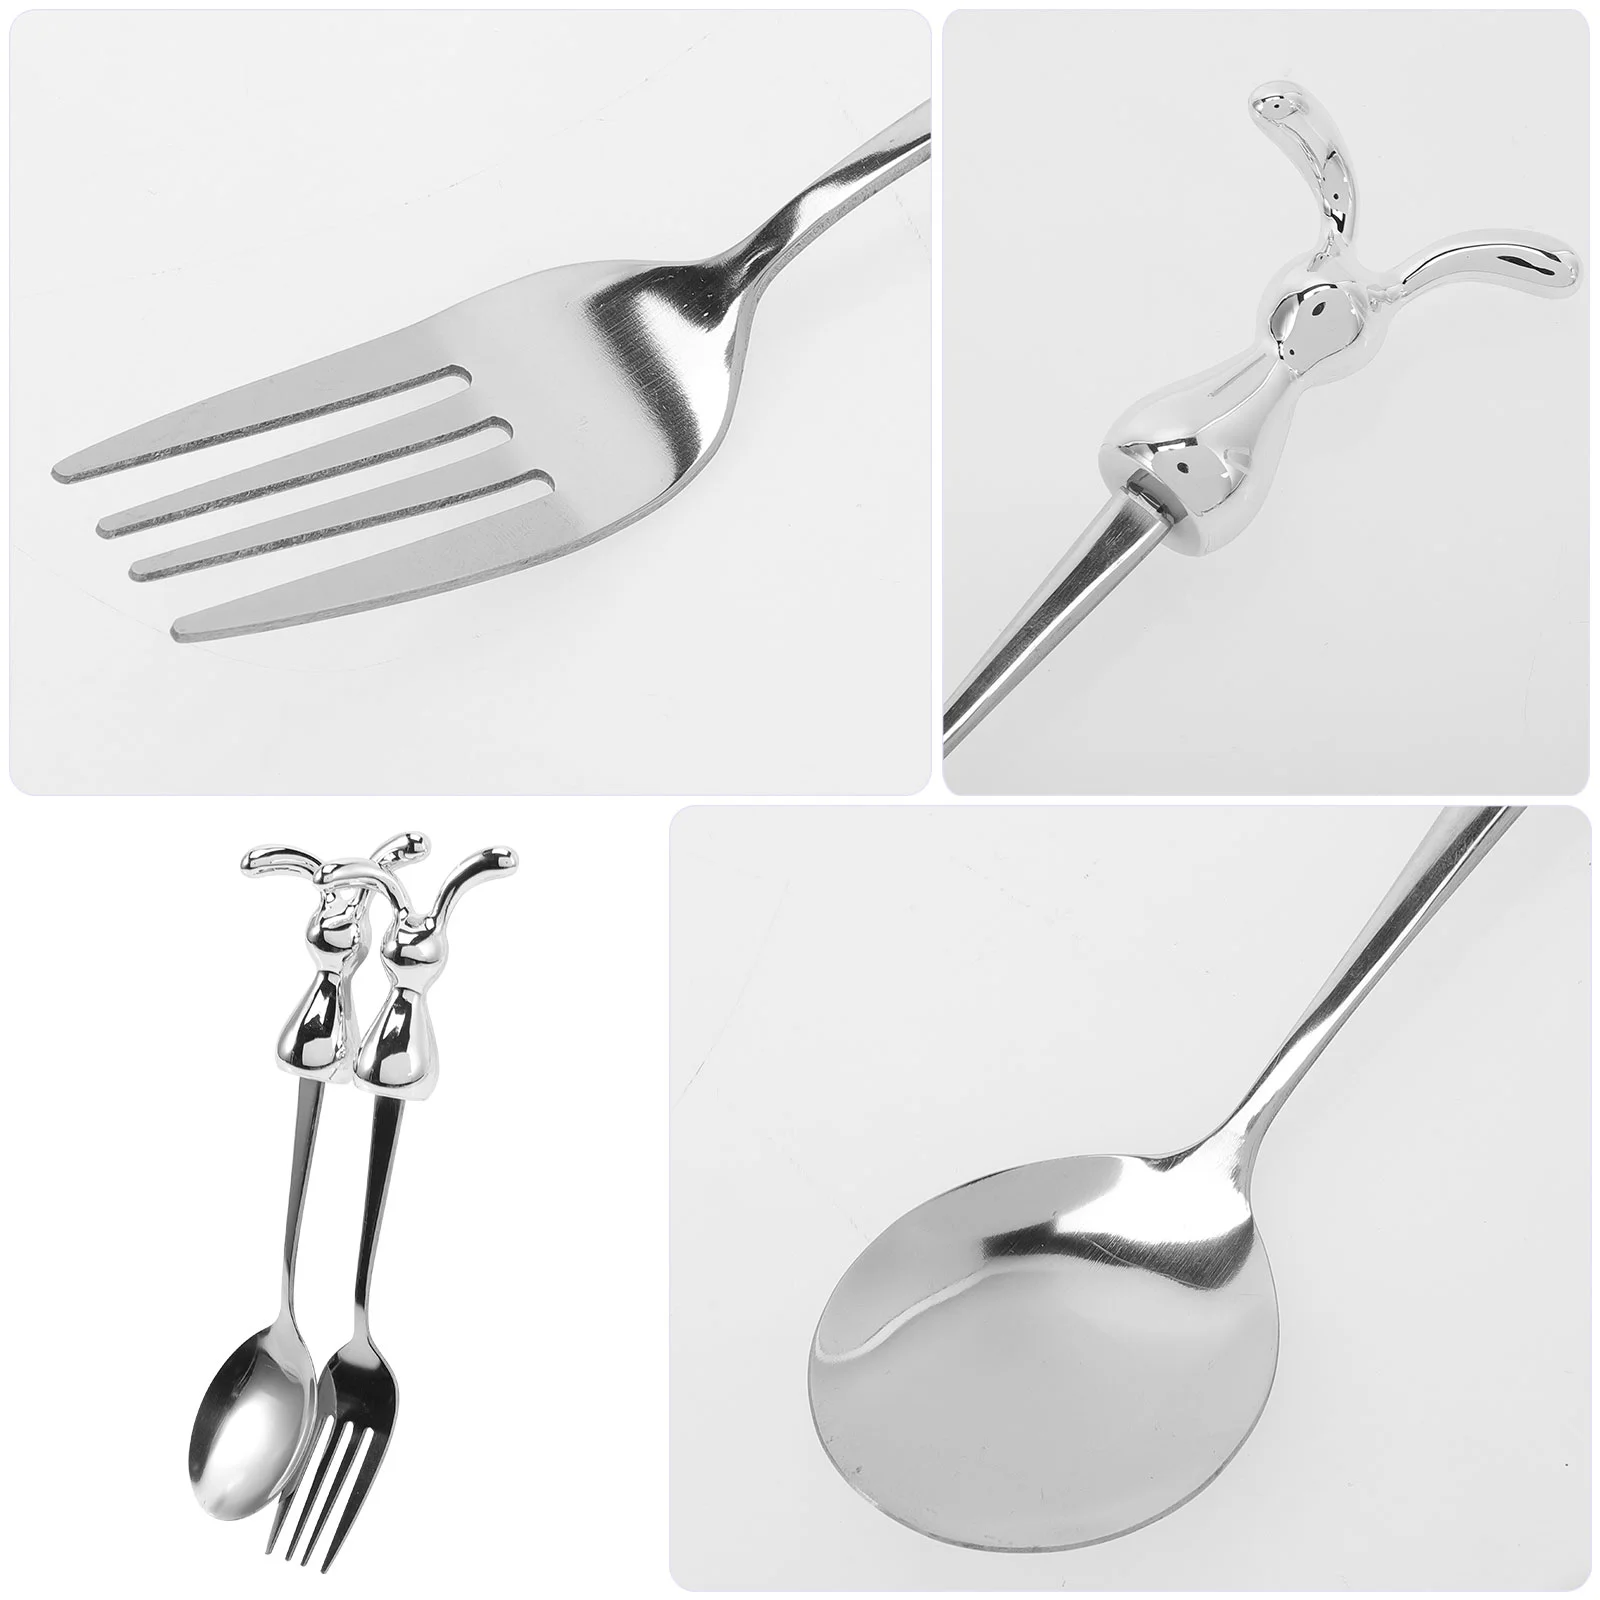 Set Spoon Easter Fork Spoons Forks Rabbit Cutlery Year Silverware Utensils Fruit Dessert Steel Kids Stainless Drink Serving